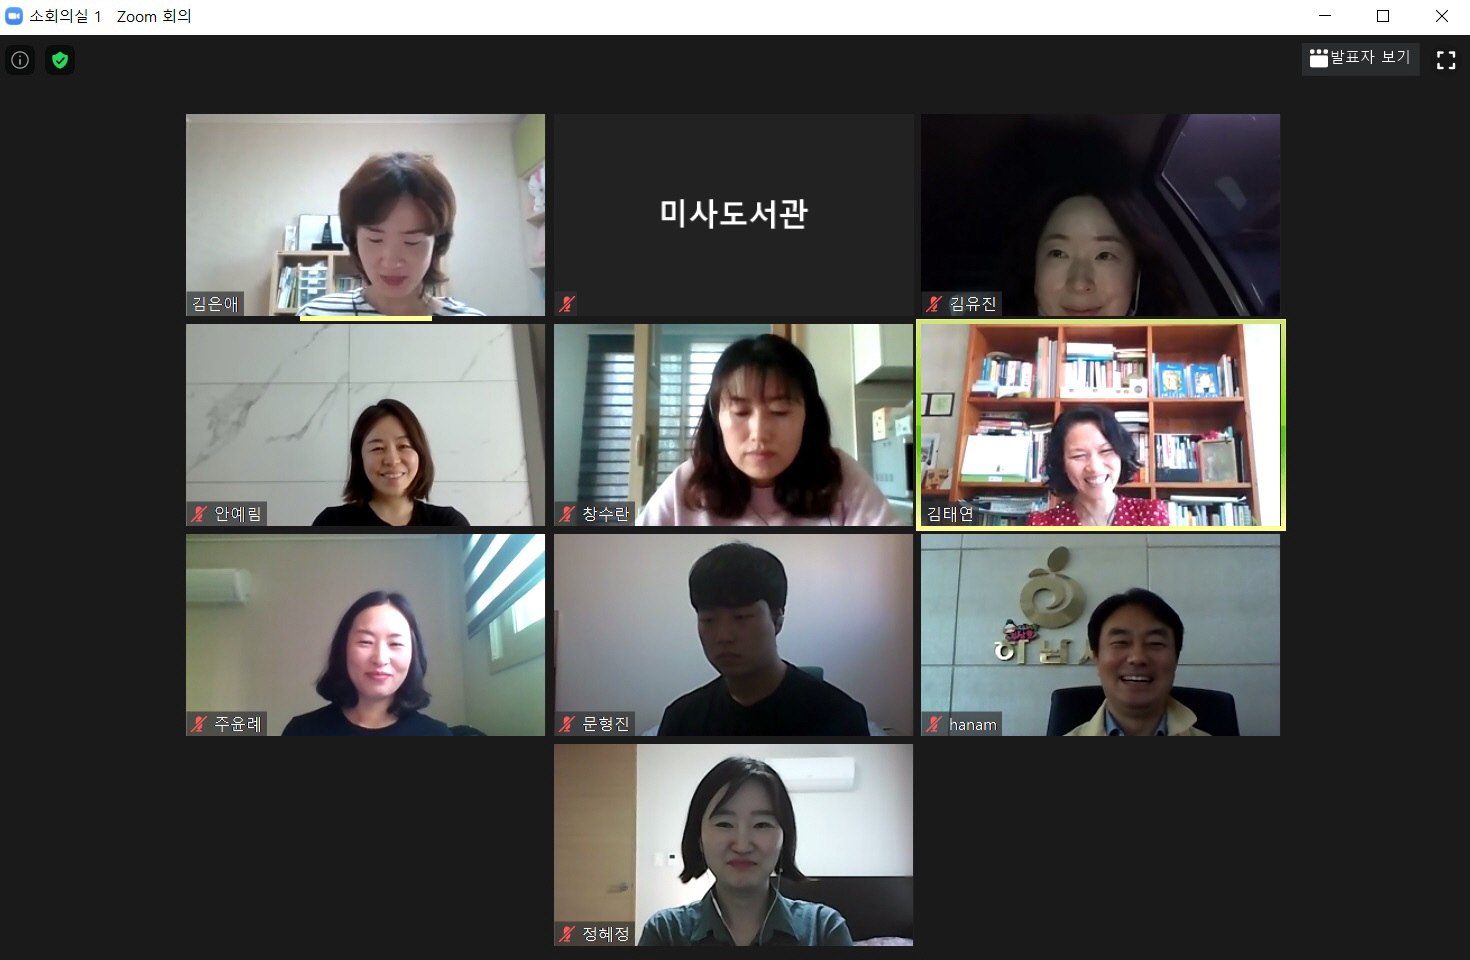 김상호 하남시장과 함께 하는 온라인 독서 토론 프로그램 진행